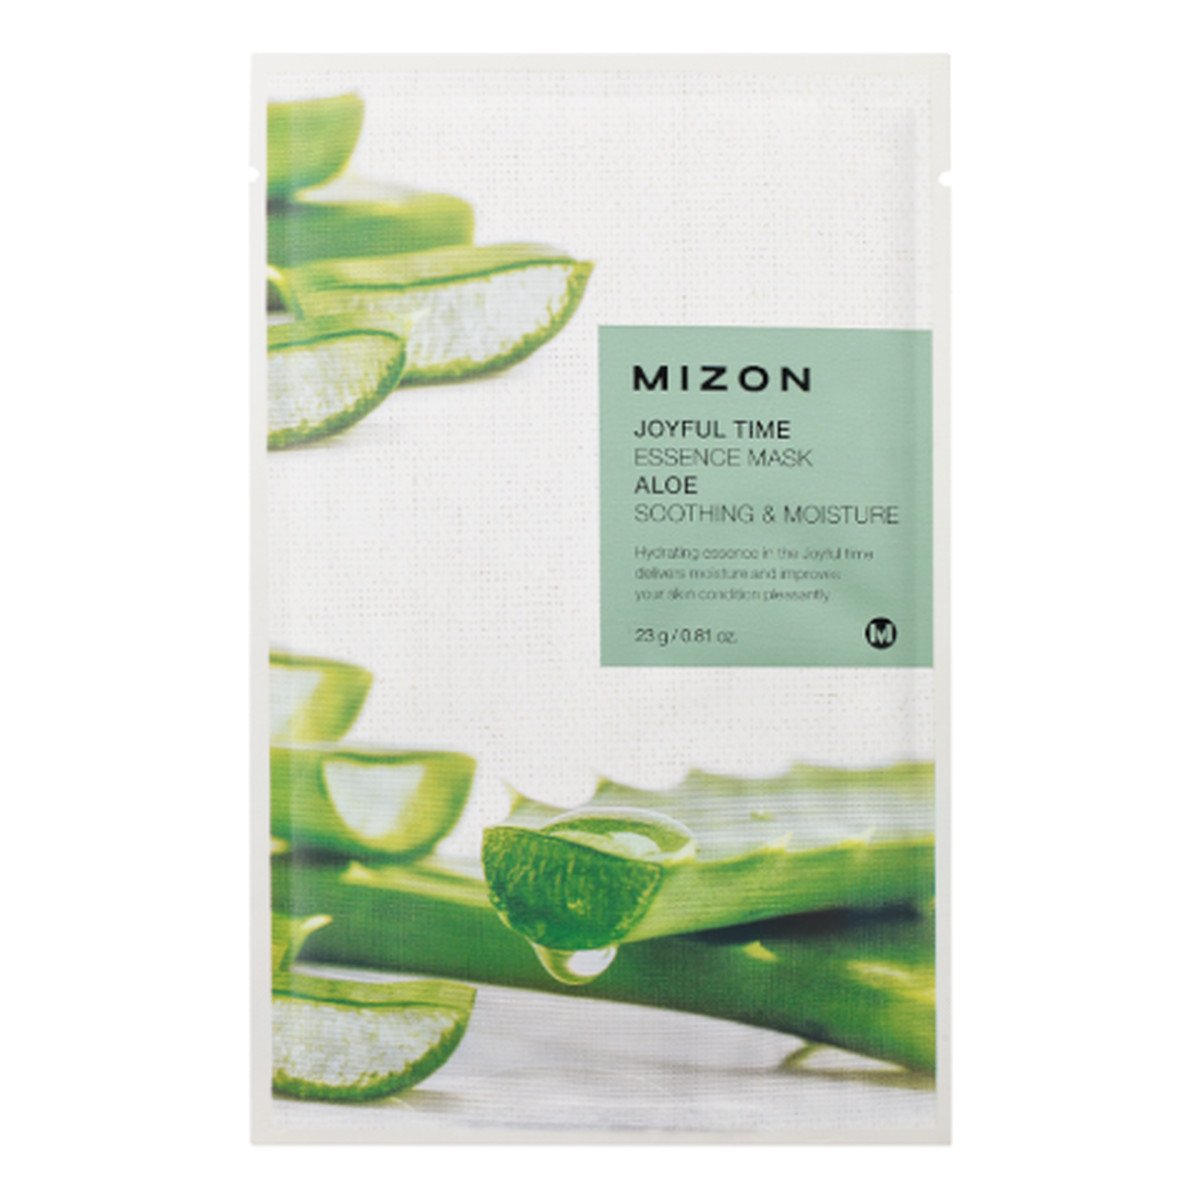 Mizon Joyful Time Essence Maska na płacie bawełny Aloe 23g